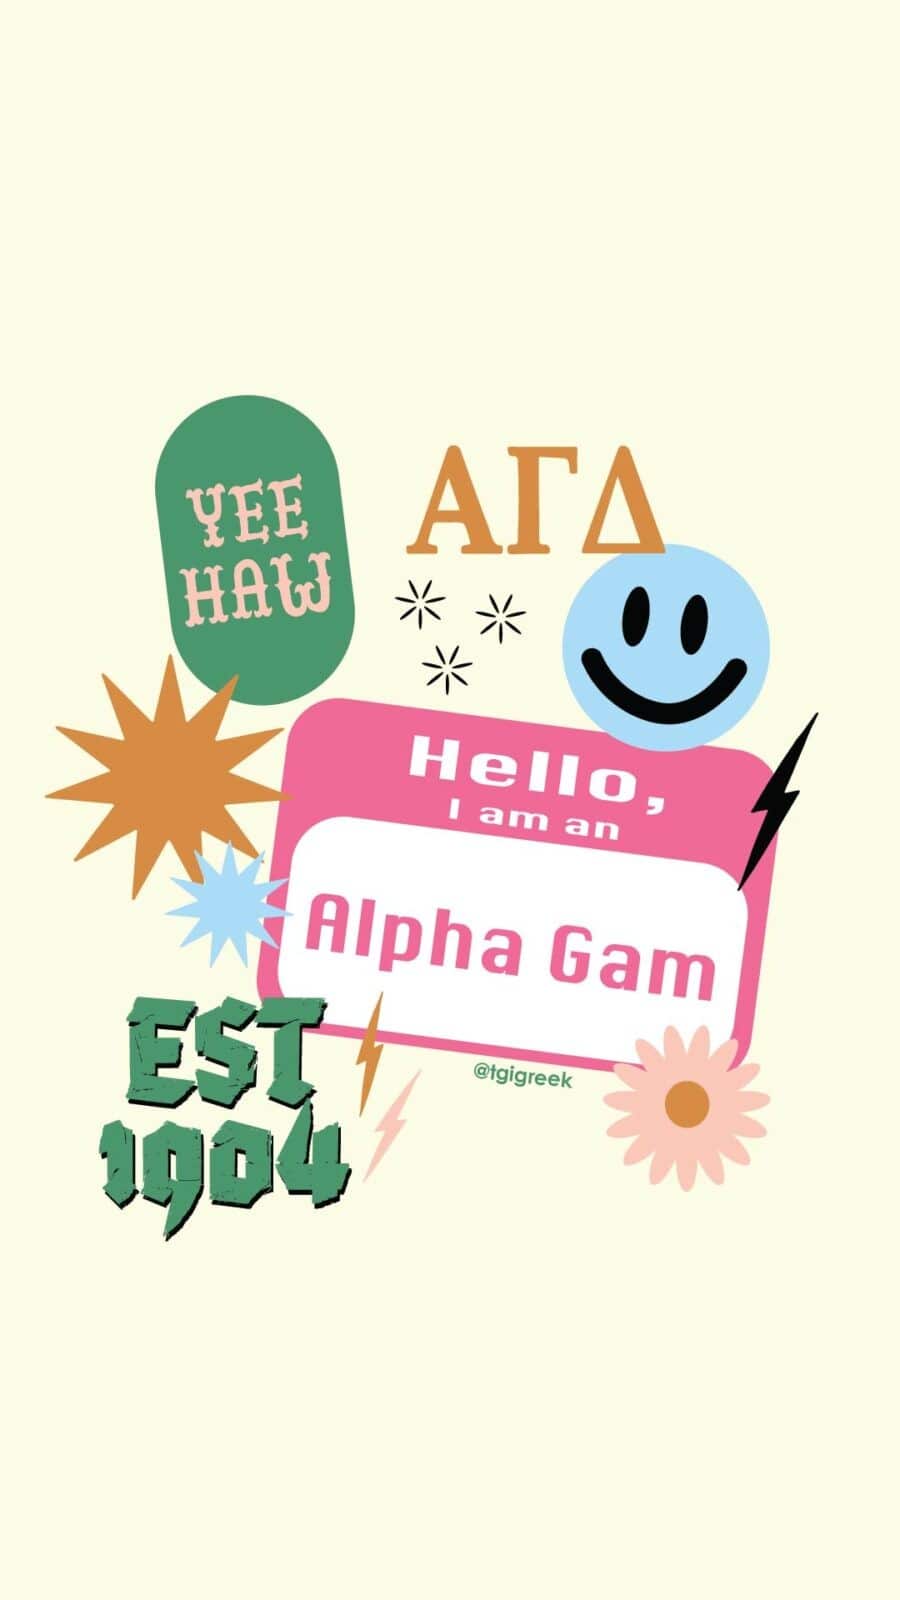 Alpha Gamma Delta Logo Cell Phone Pocket